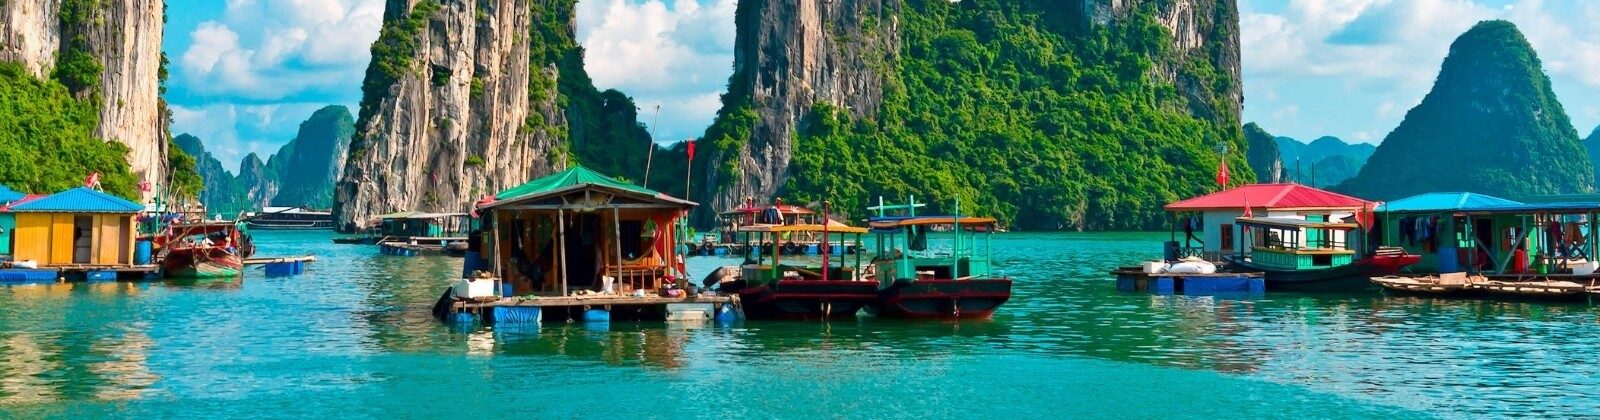 floating houses in vietnam